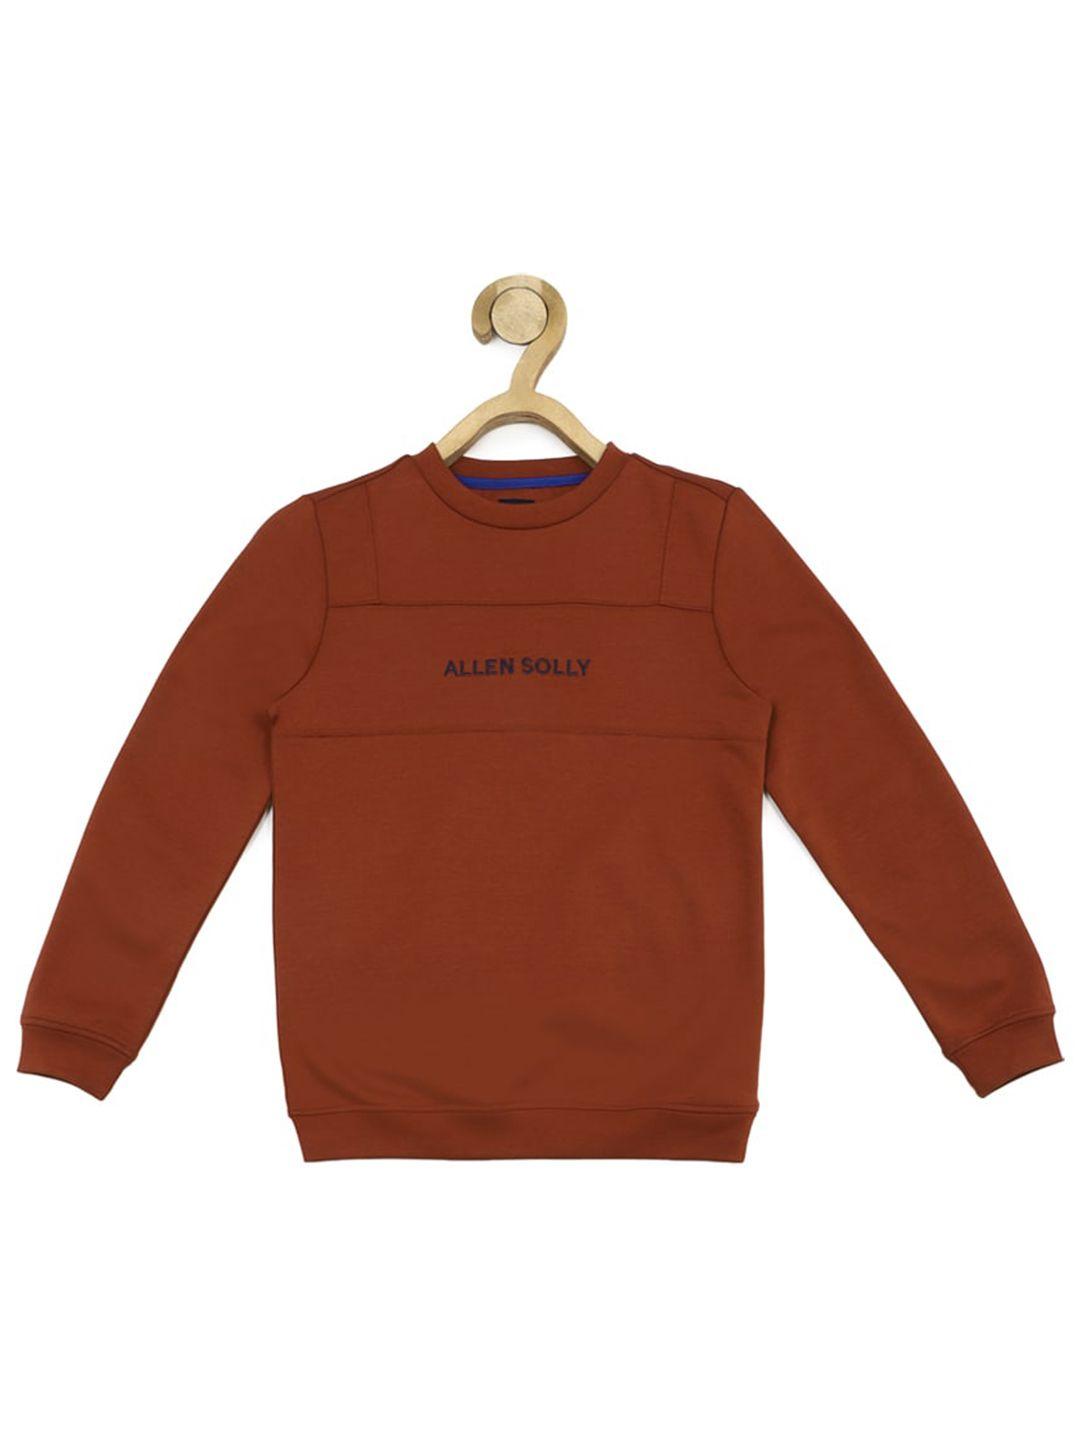 allen-solly-junior-boys-typography-printed-cotton-pullover-sweatshirt